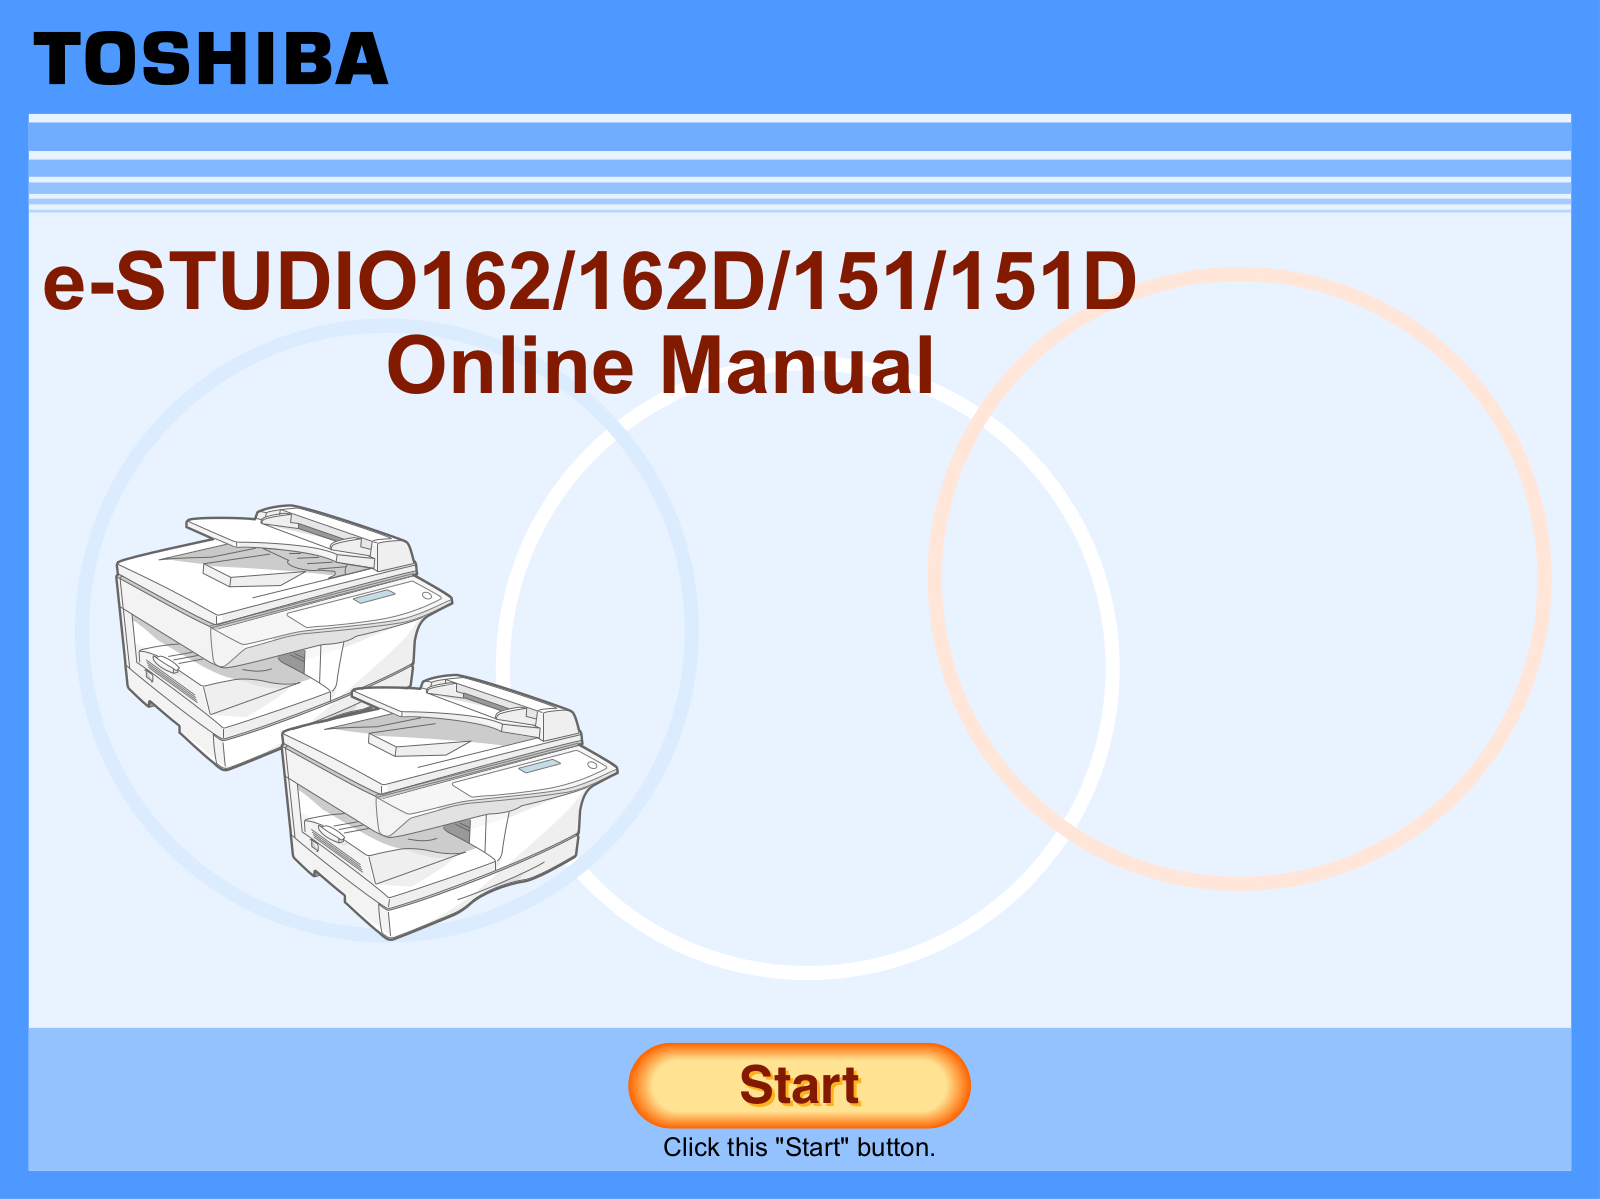 TOSHIBA 162, 162D, 151, 151D User Manual